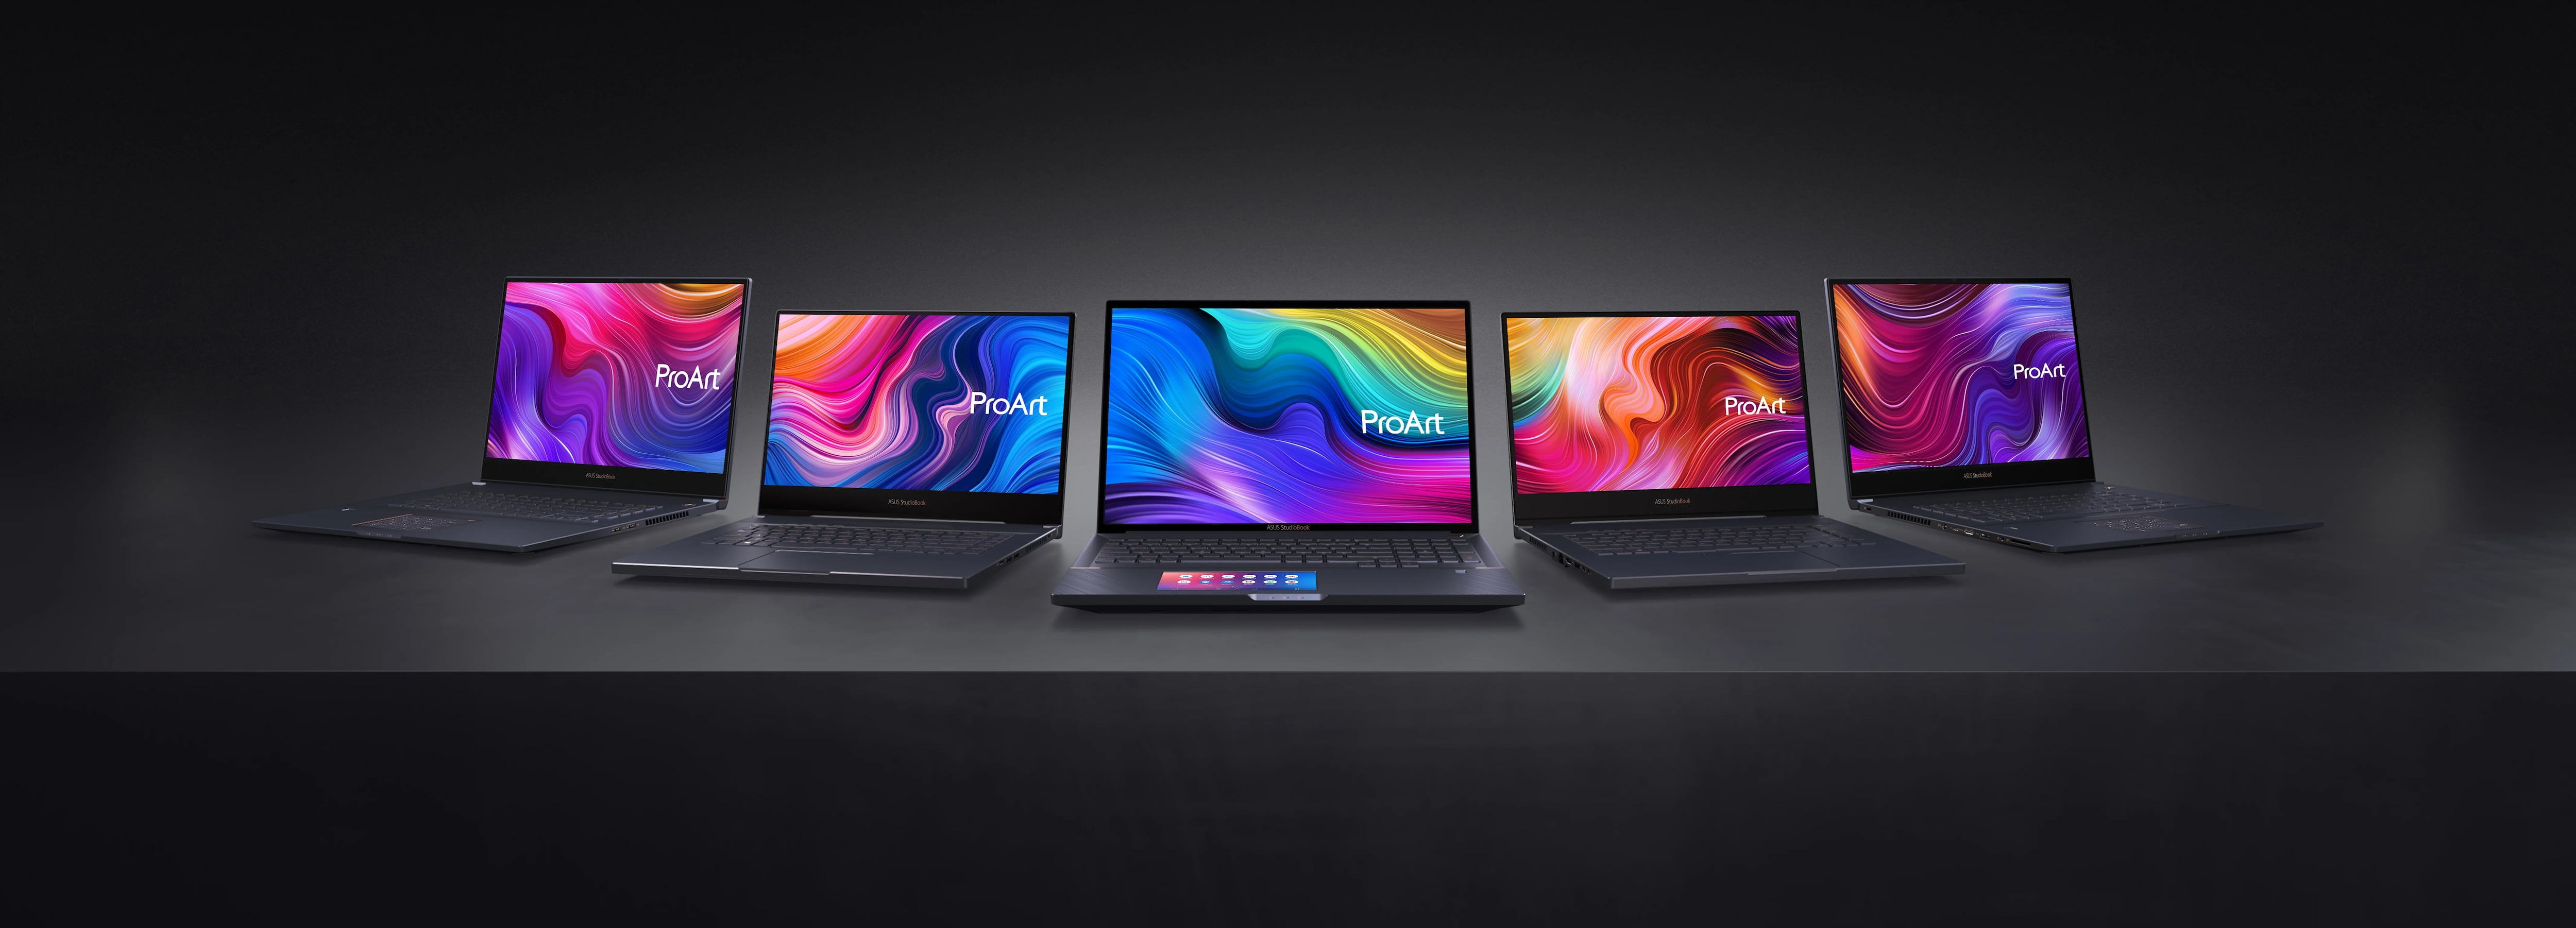 Asus presentó su nueva línea de laptops.